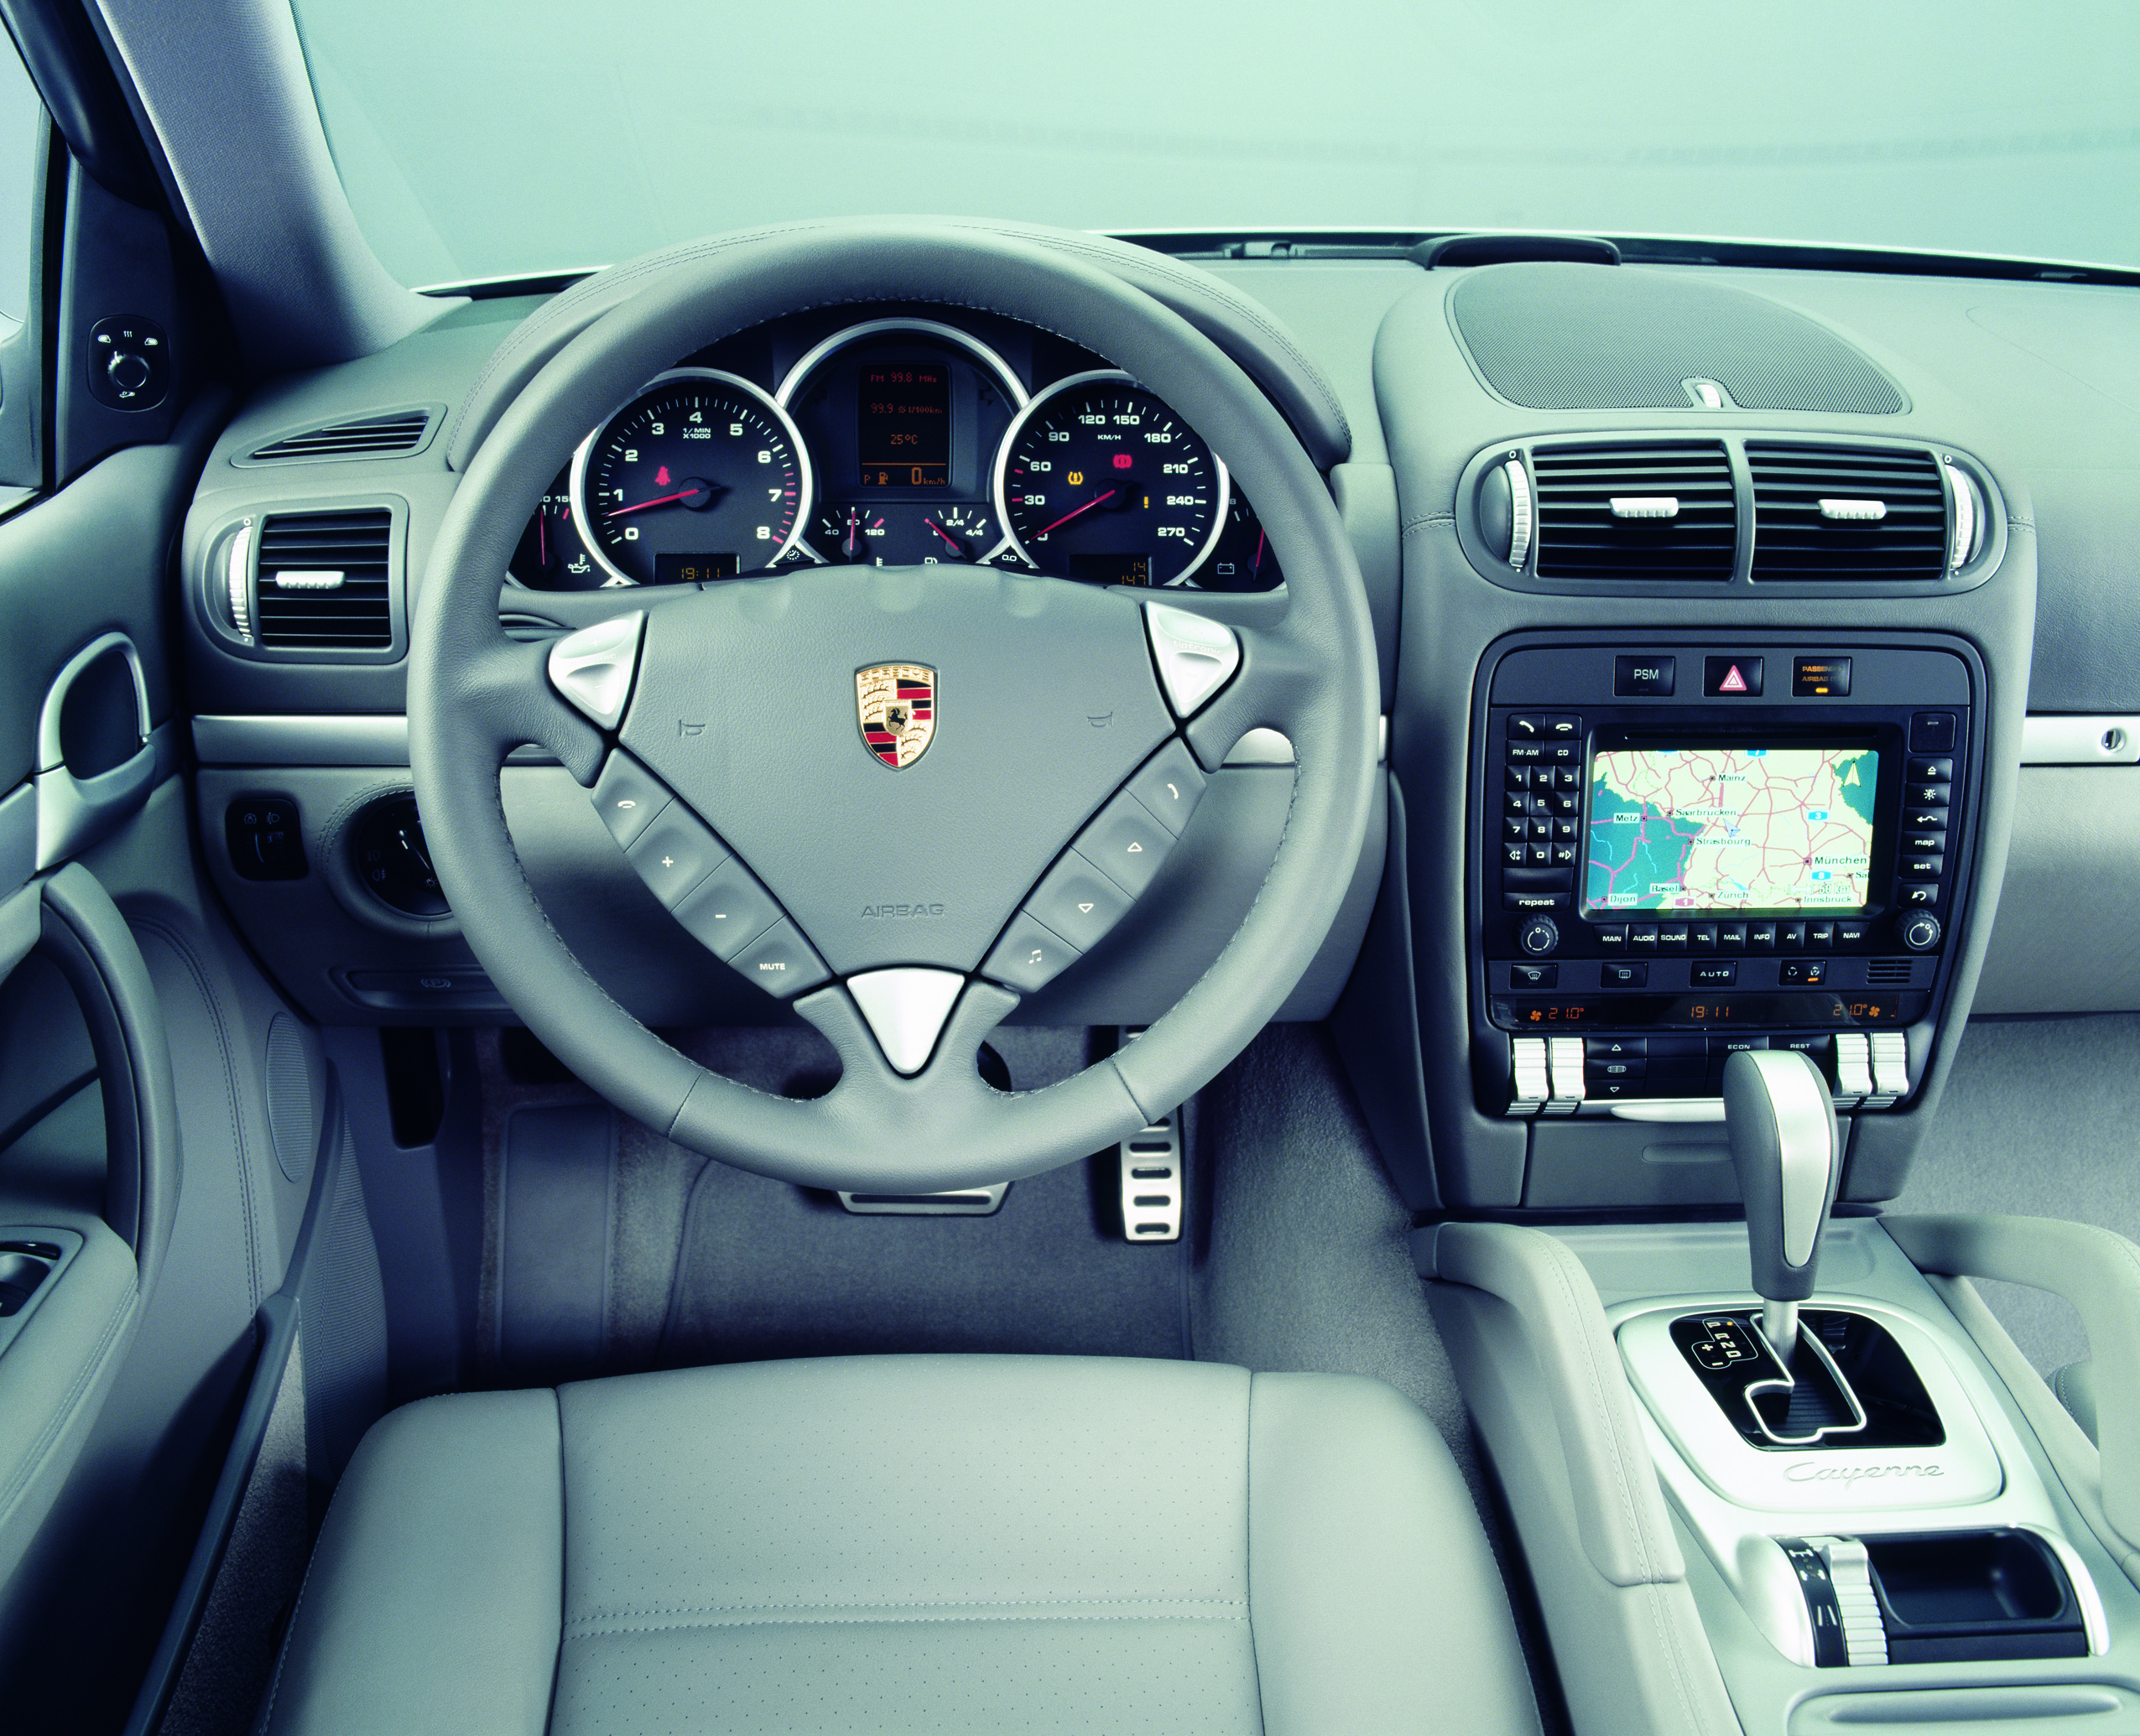 Original Porsche Cayenne gen 1 interior